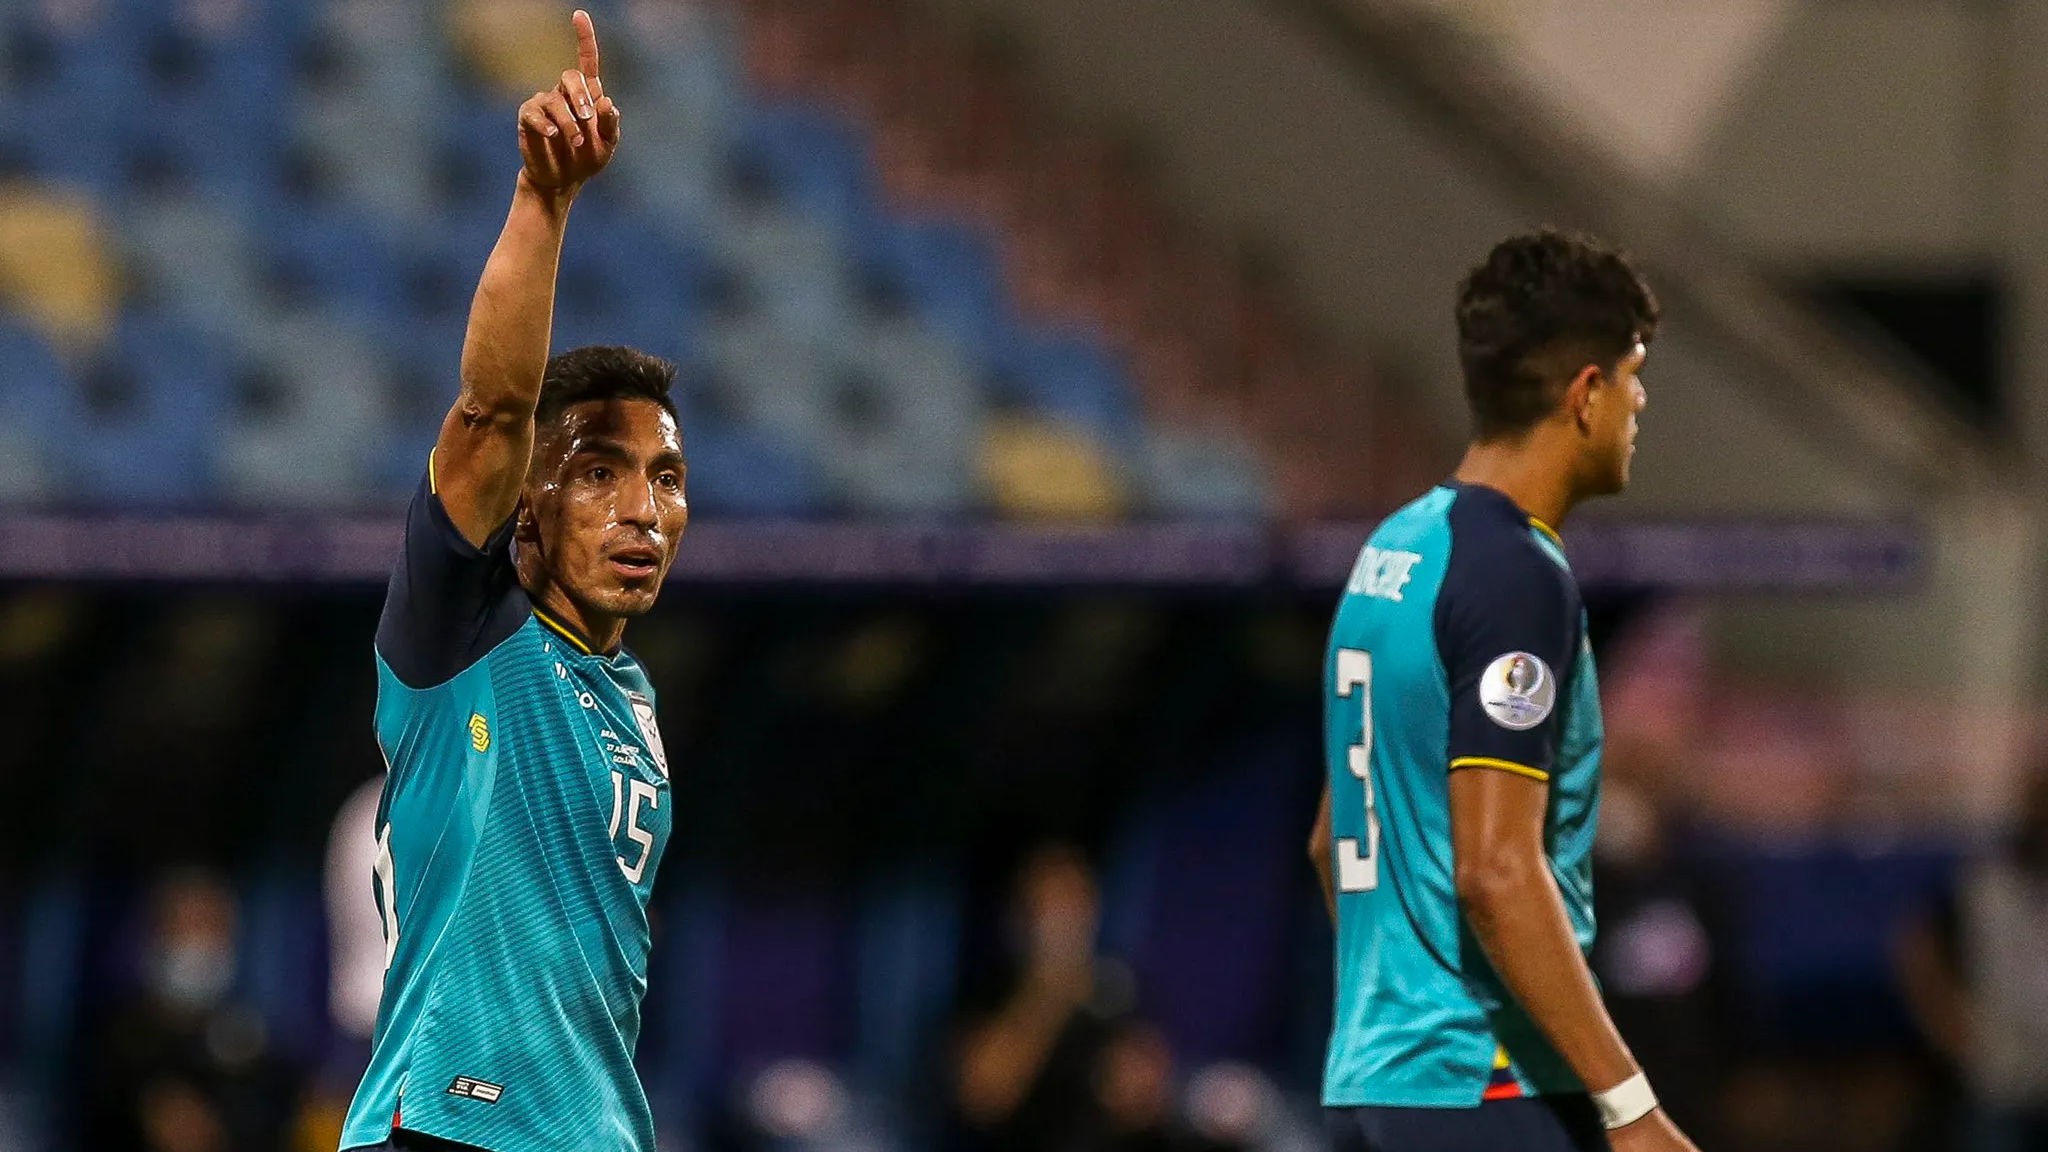 Copa America: Ecuador salvage draw against Brazil to reach quarters